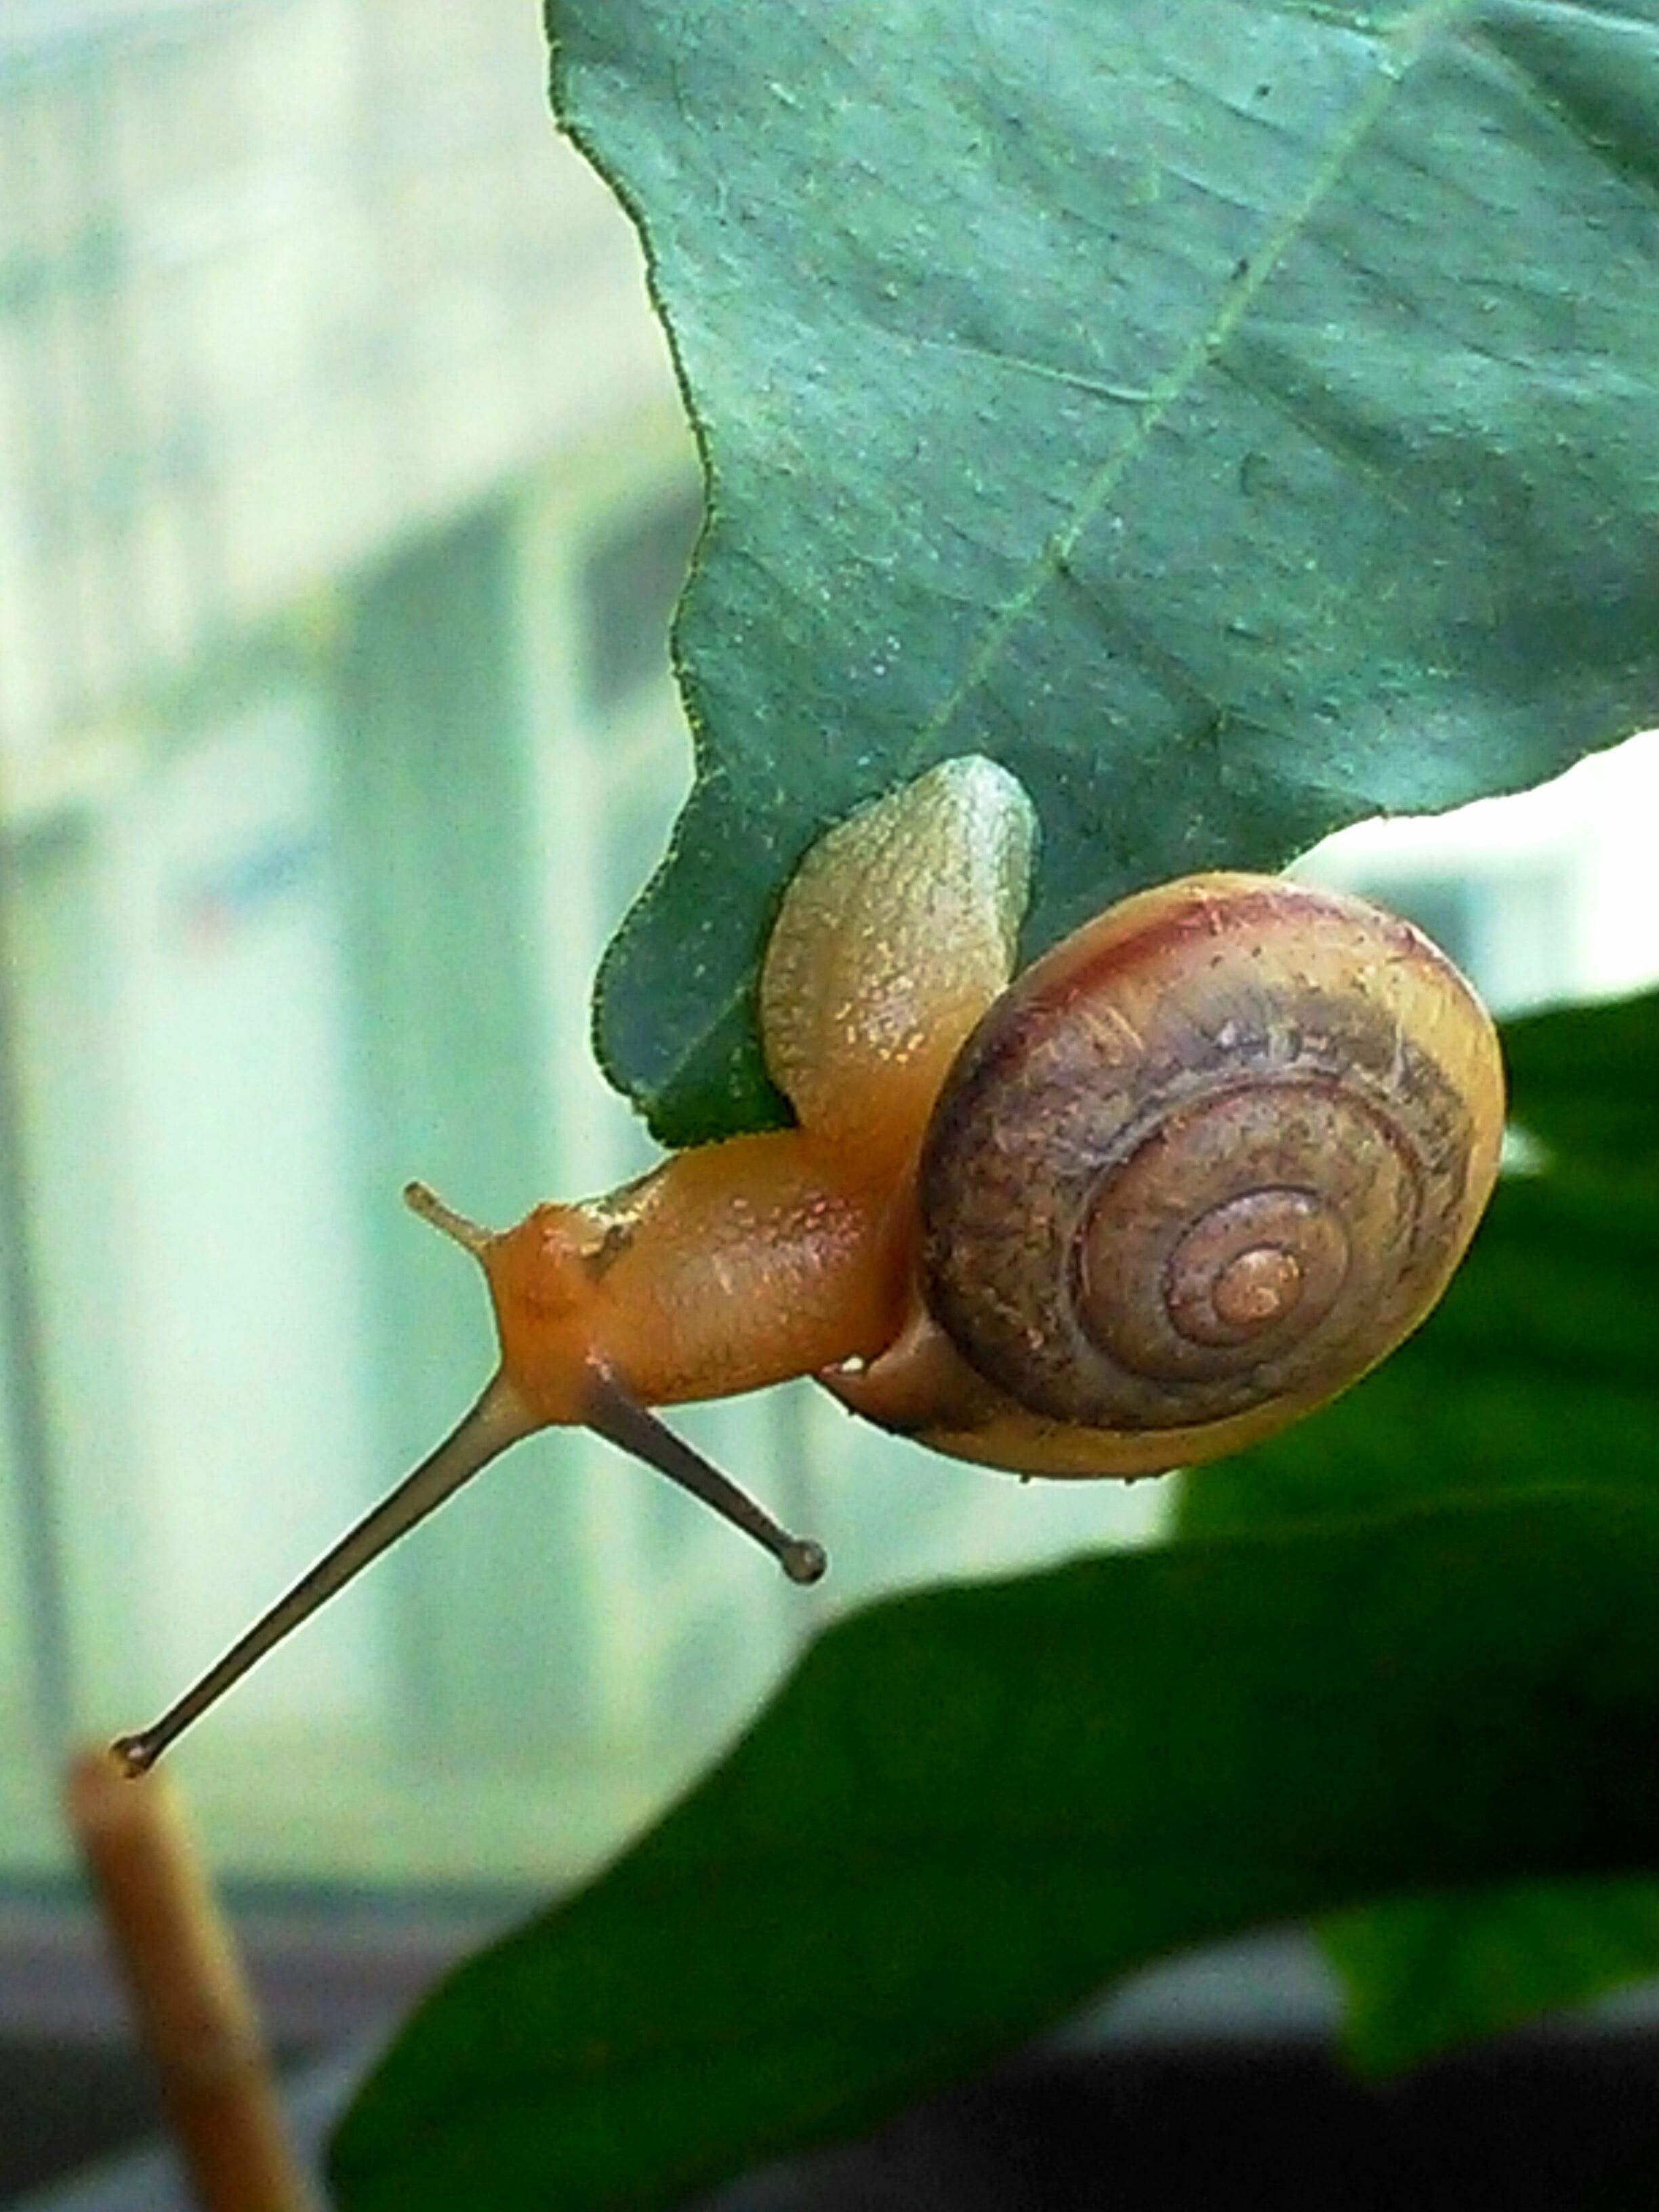 蜗牛的种类名称图片-图库-五毛网